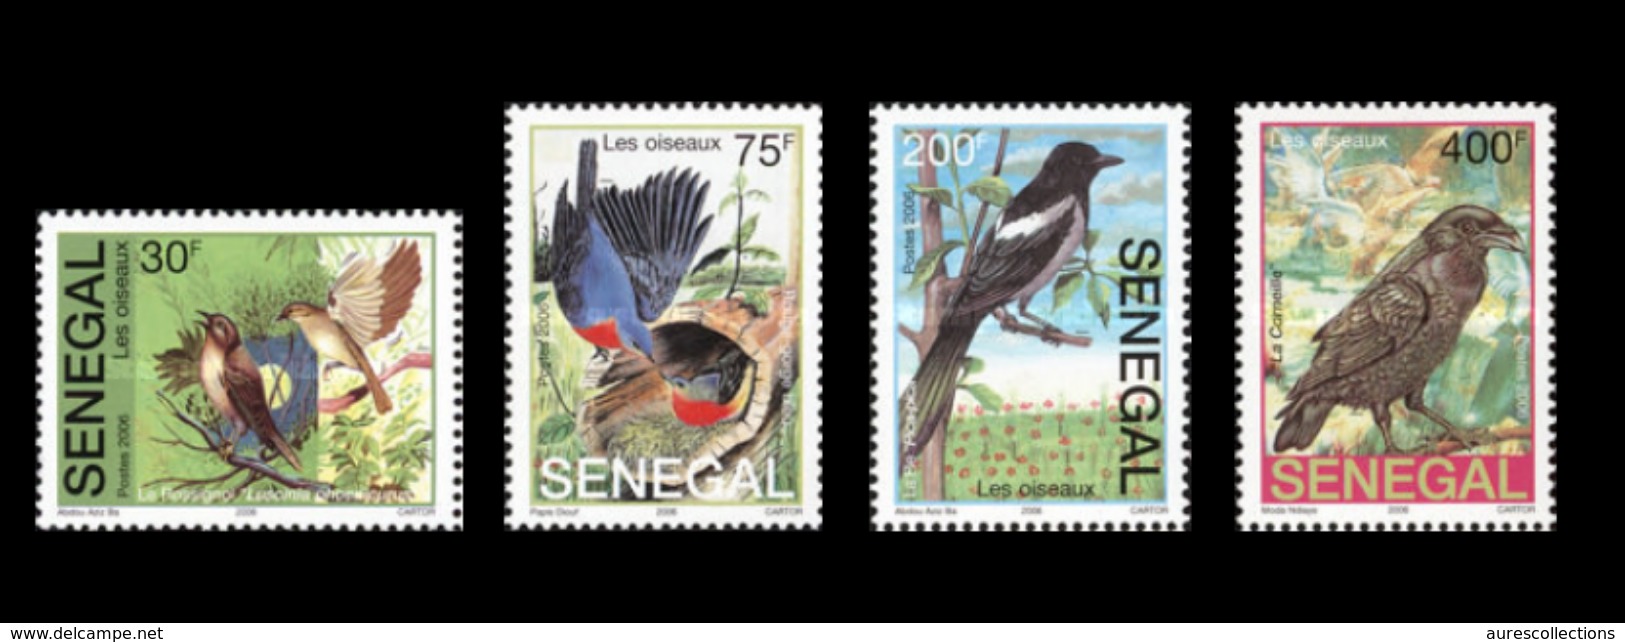 SENEGAL 2004 2006 OISEAUX OISEAU BIRDS BIRD - RARE -  MNH ** - Sénégal (1960-...)